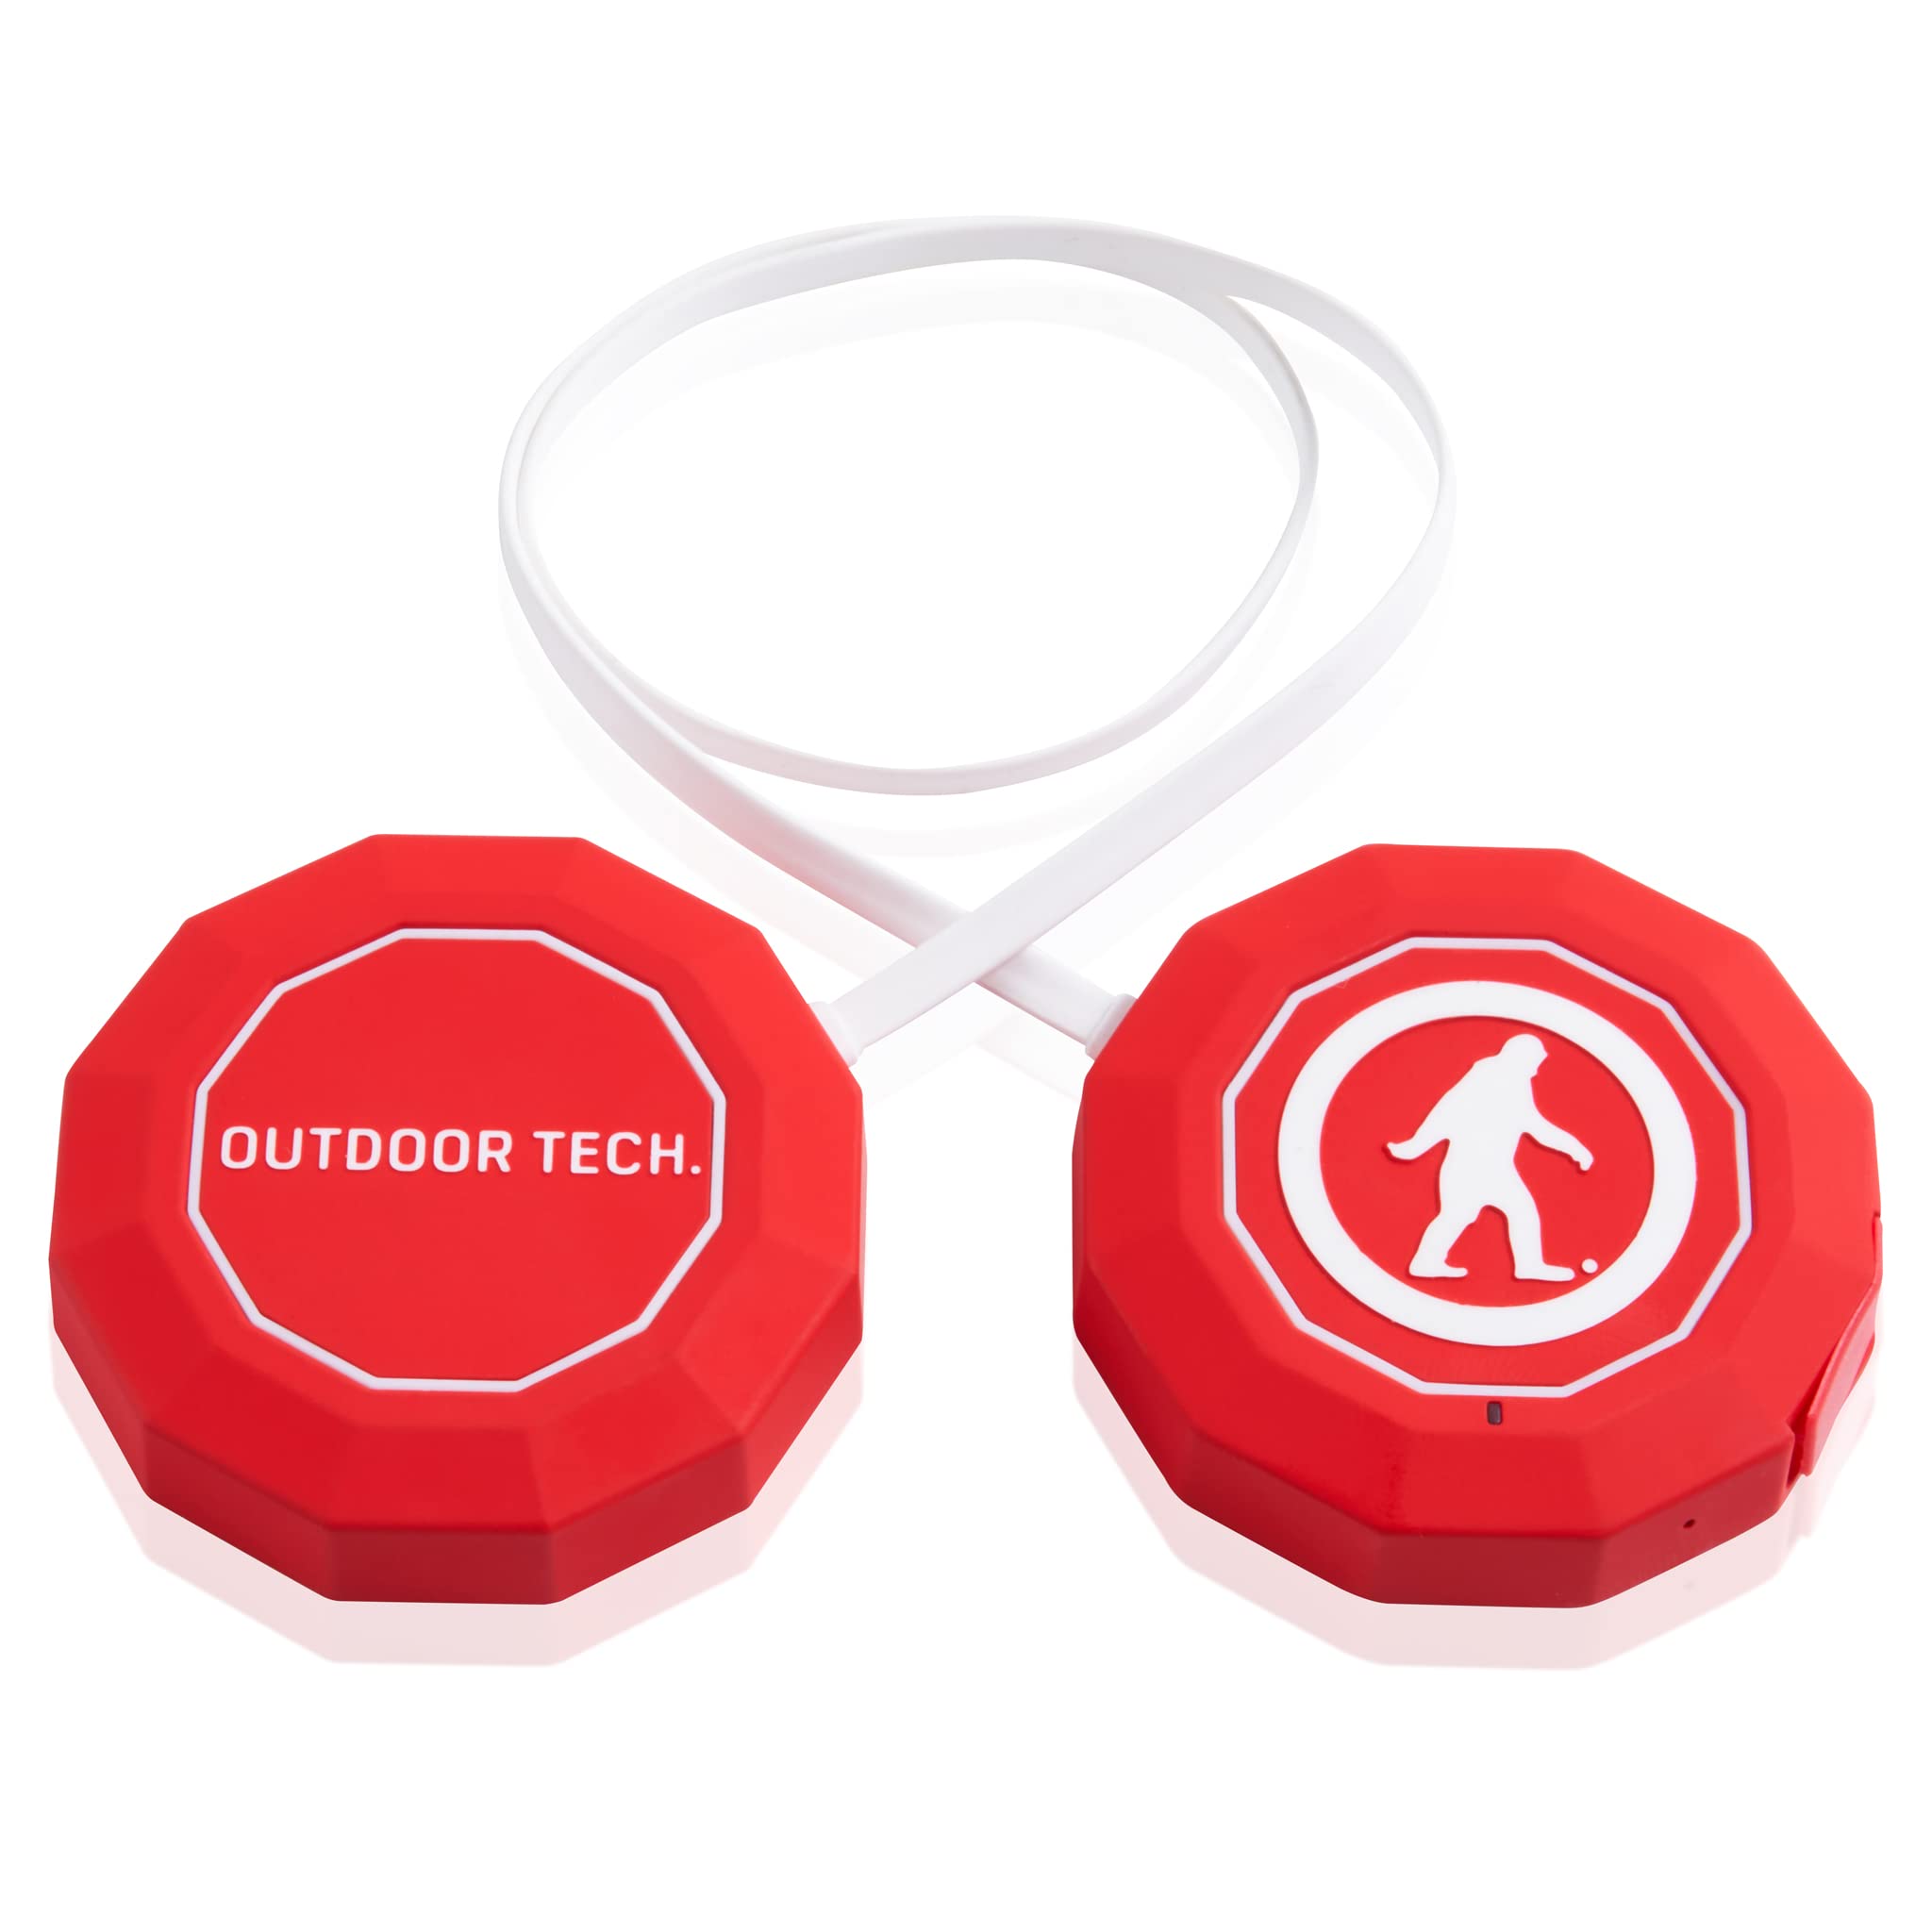  Outdoor Tech Chips 3.0 Alto-falantes para capacete de neve com Bluetooth para áudio e música de capacete sem fio para capacetes de snowboard e capacetes de esqui Compatível com a maioria dos capacetes...